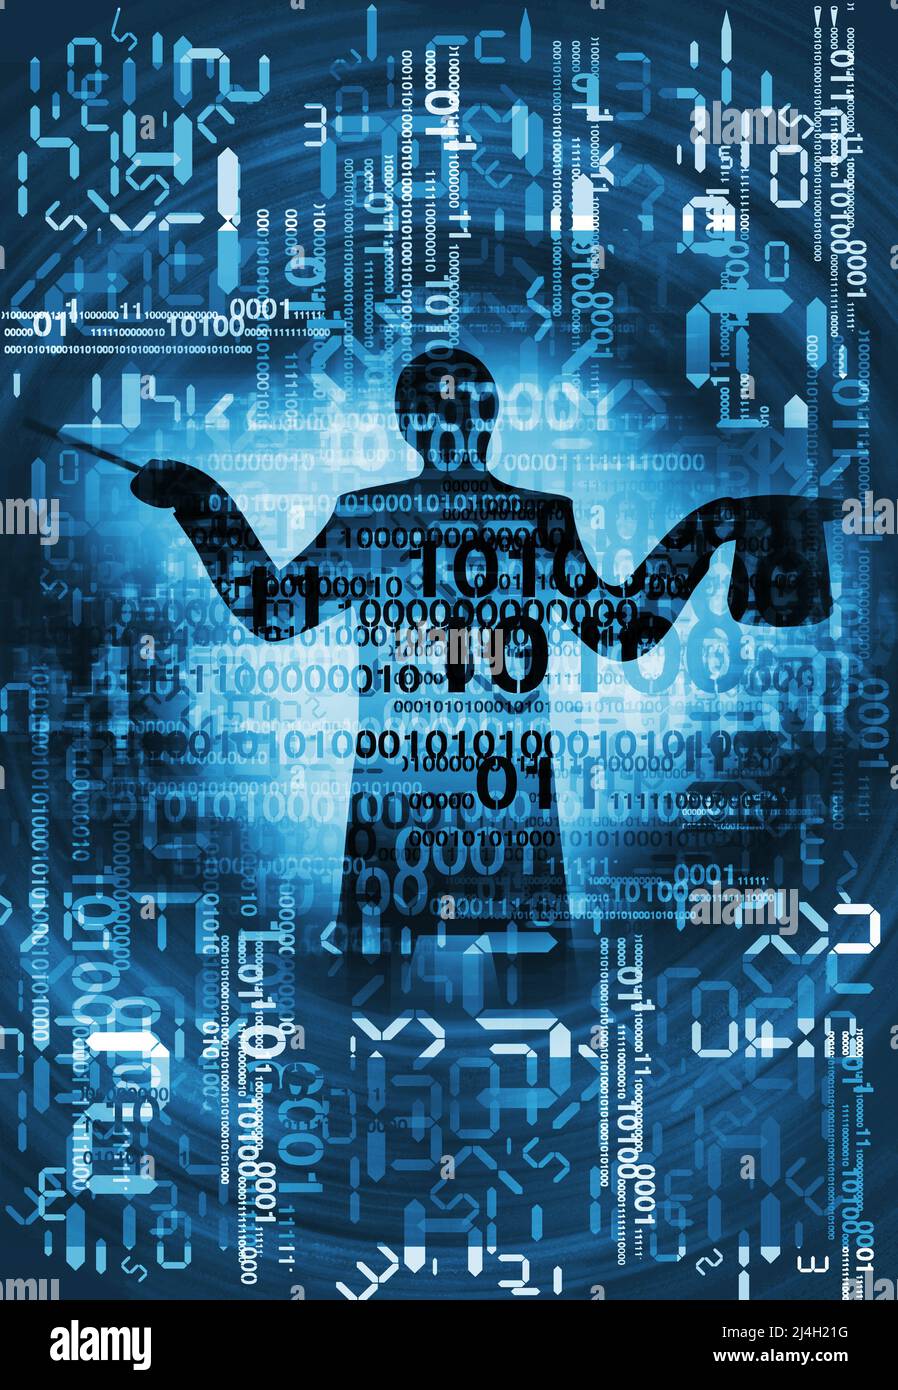 Experto en computación, matemático, mago. Ilustración de silueta masculina estilizada con sombrero y códigos binarios en el fondo con números digitales. Foto de stock